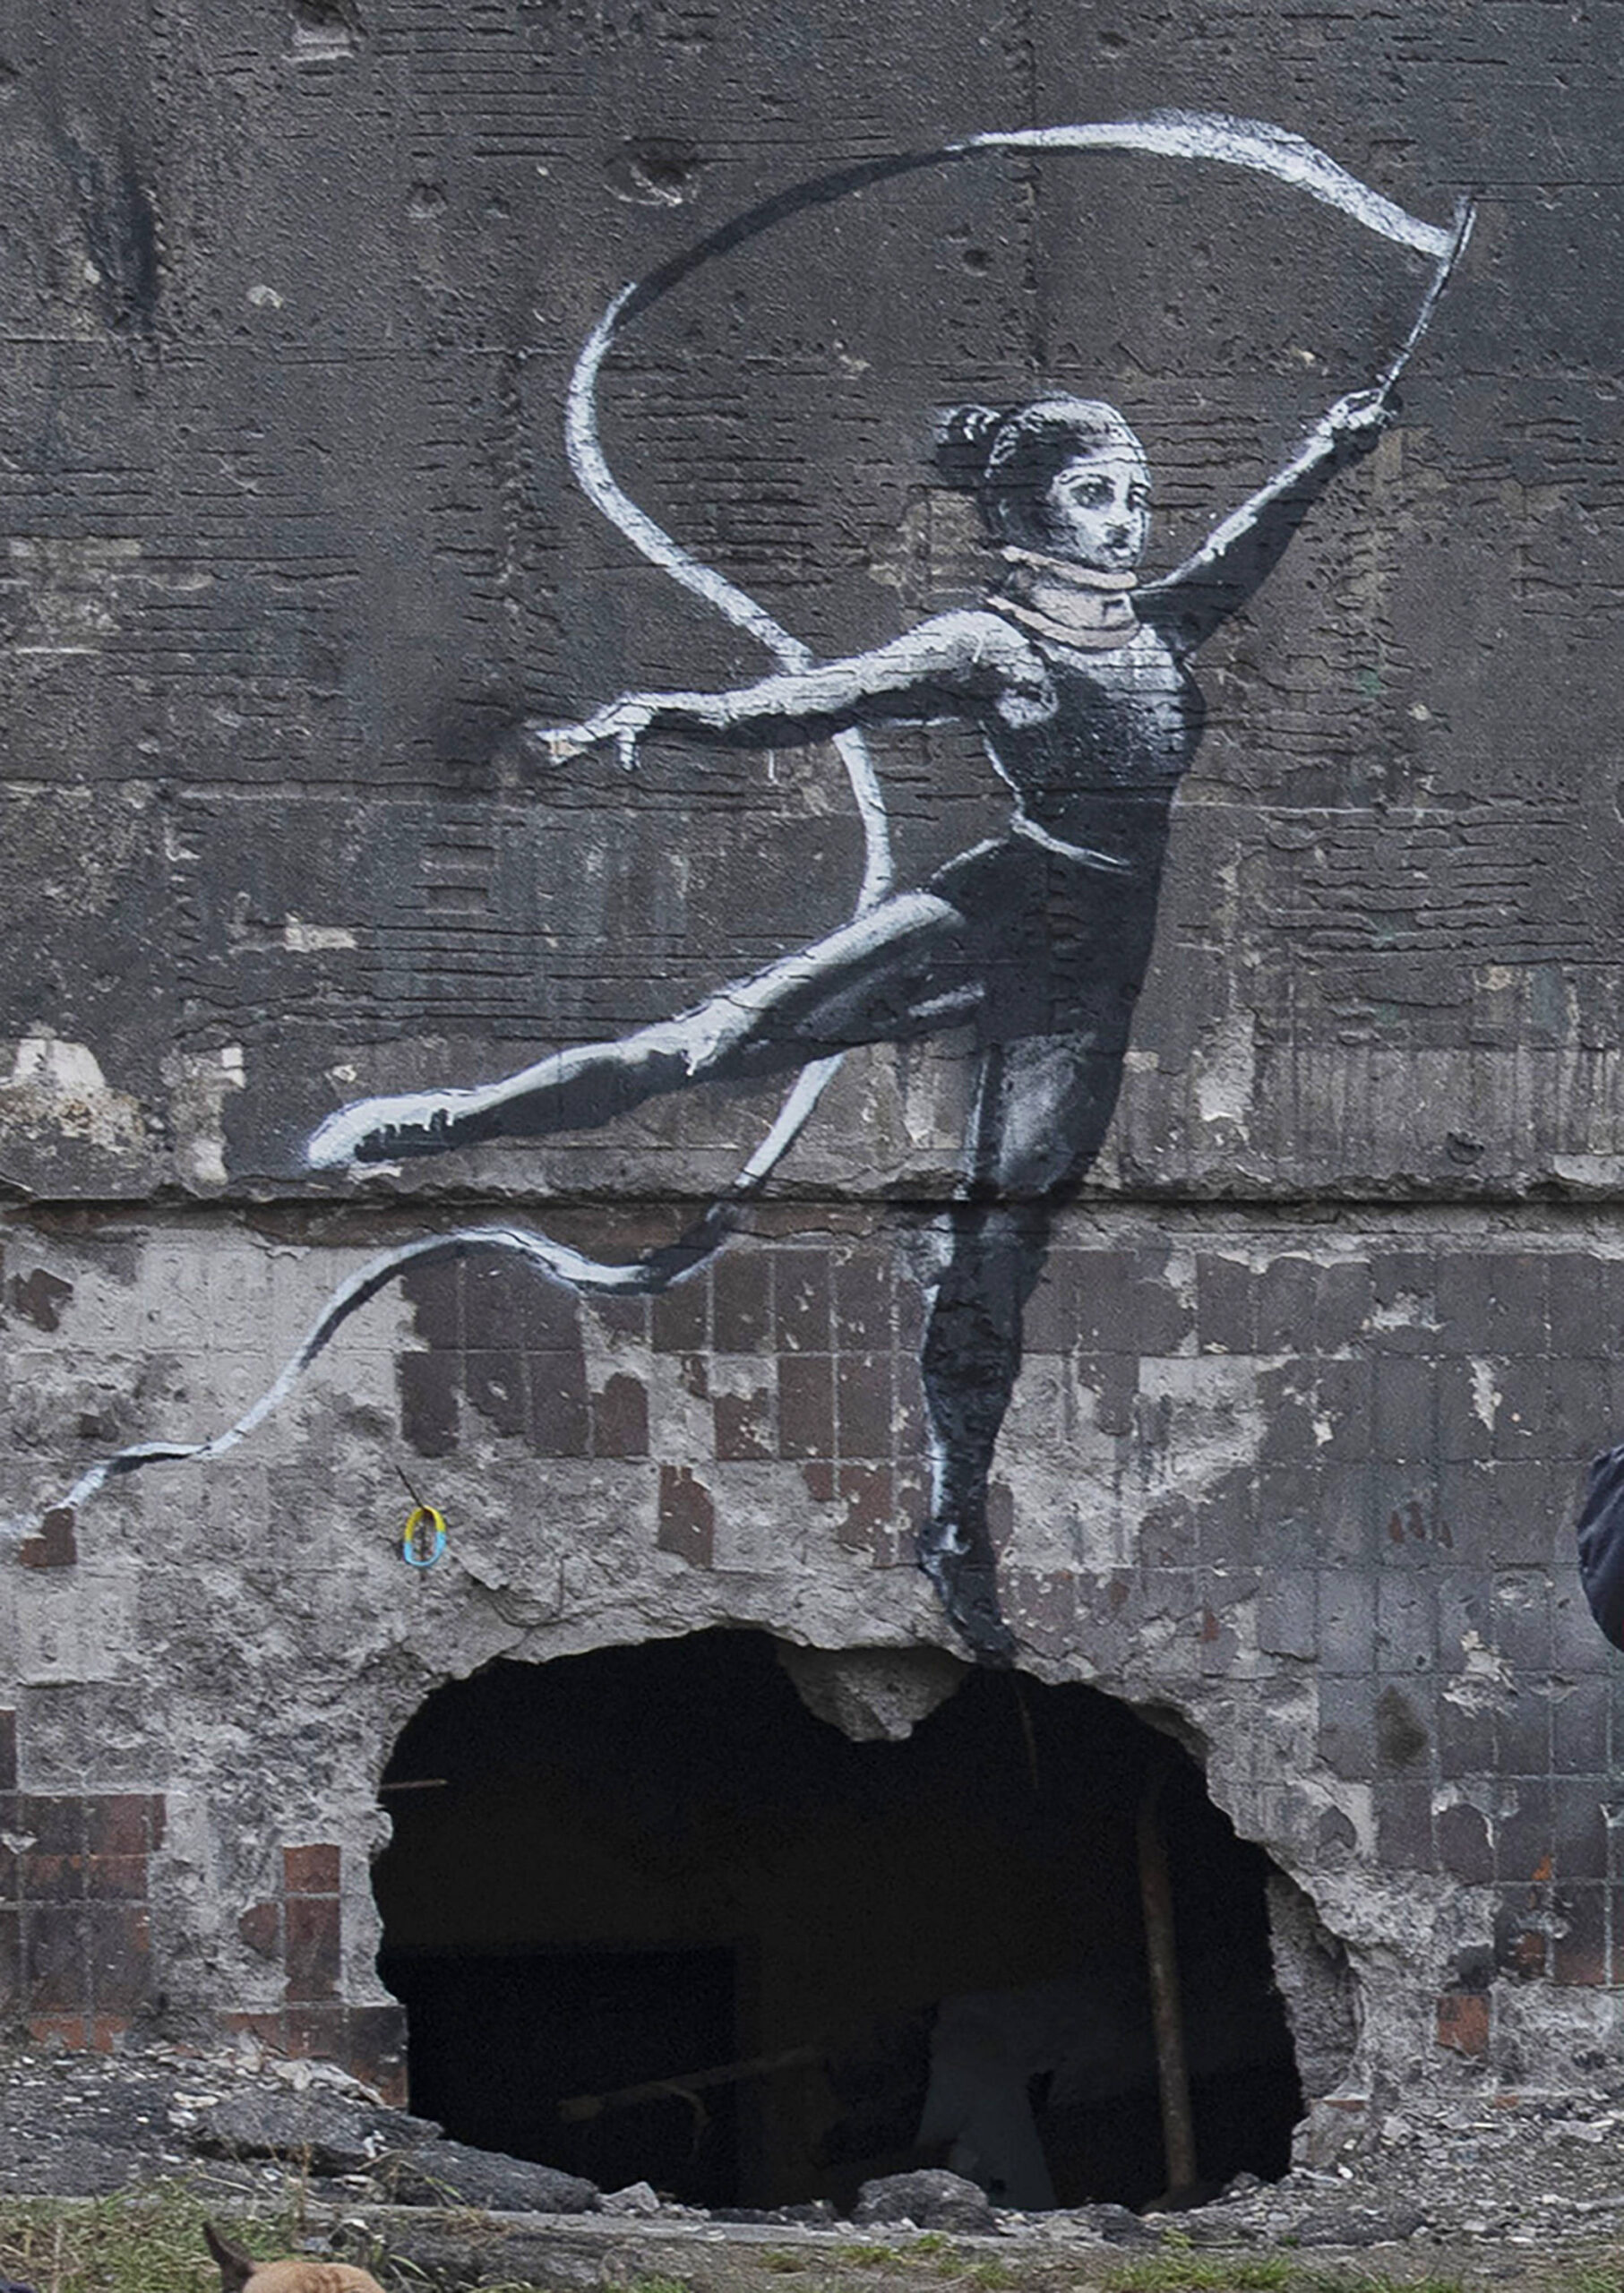 Le street artist Banksy exposé à Moscou sans son autorisation